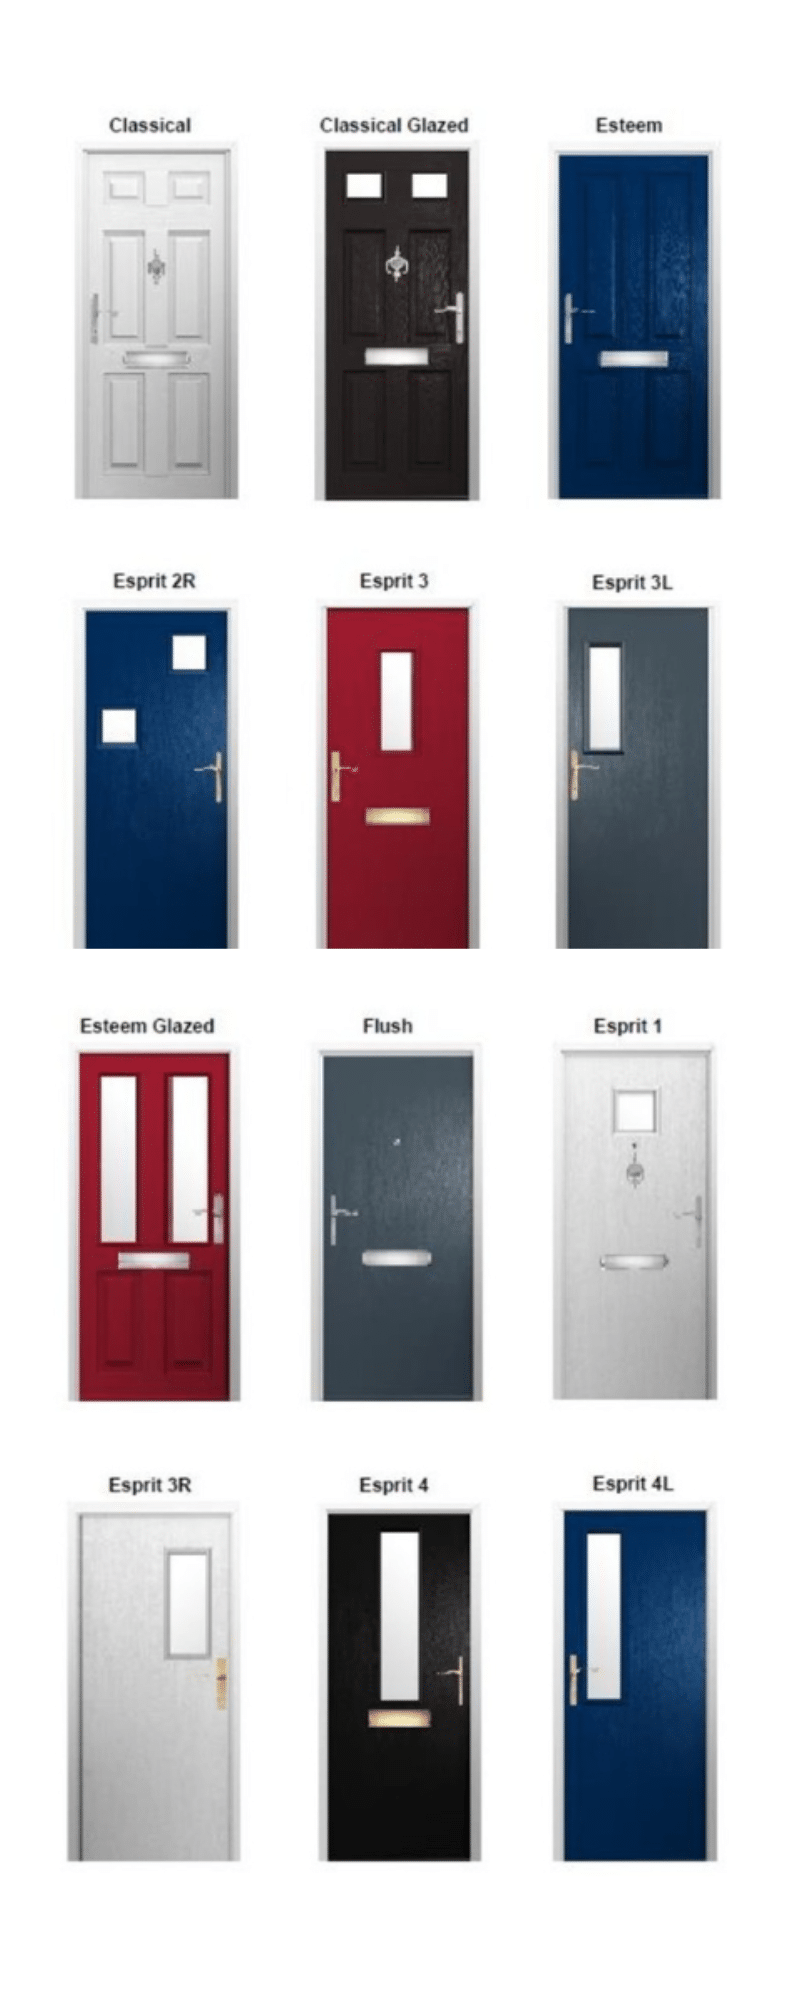 commercial FD30 fire doors in Exeter designs